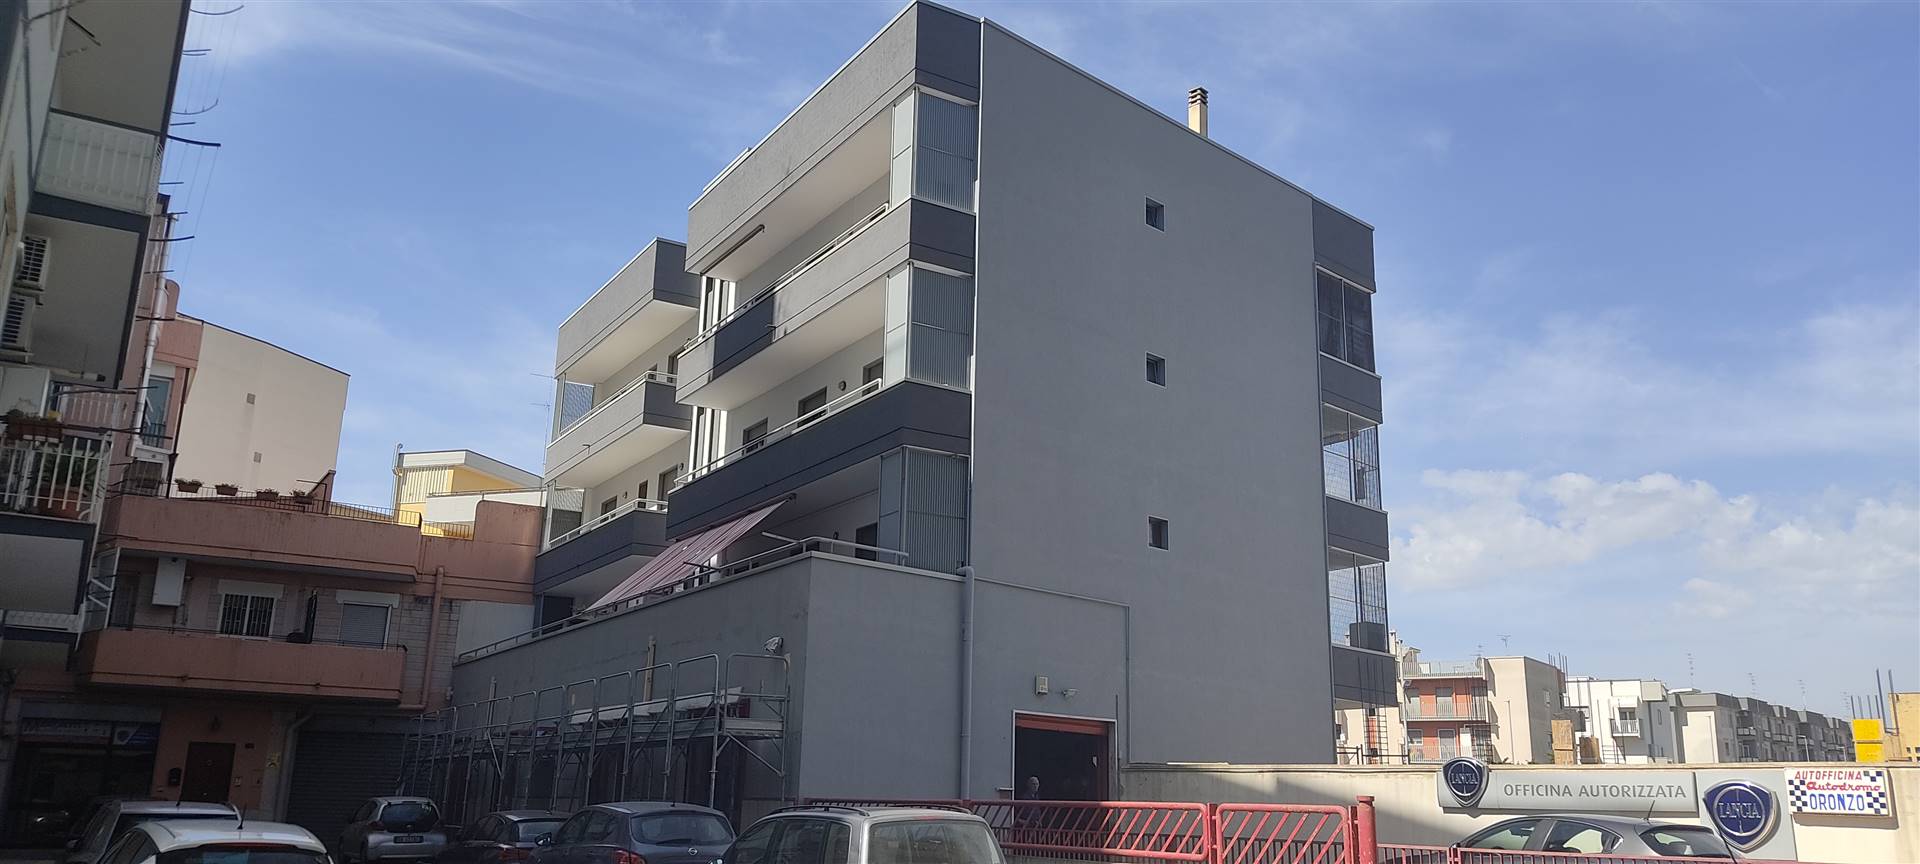 Appartamento in vendita a Gioia del Colle, 2 locali, prezzo € 85.000 | PortaleAgenzieImmobiliari.it